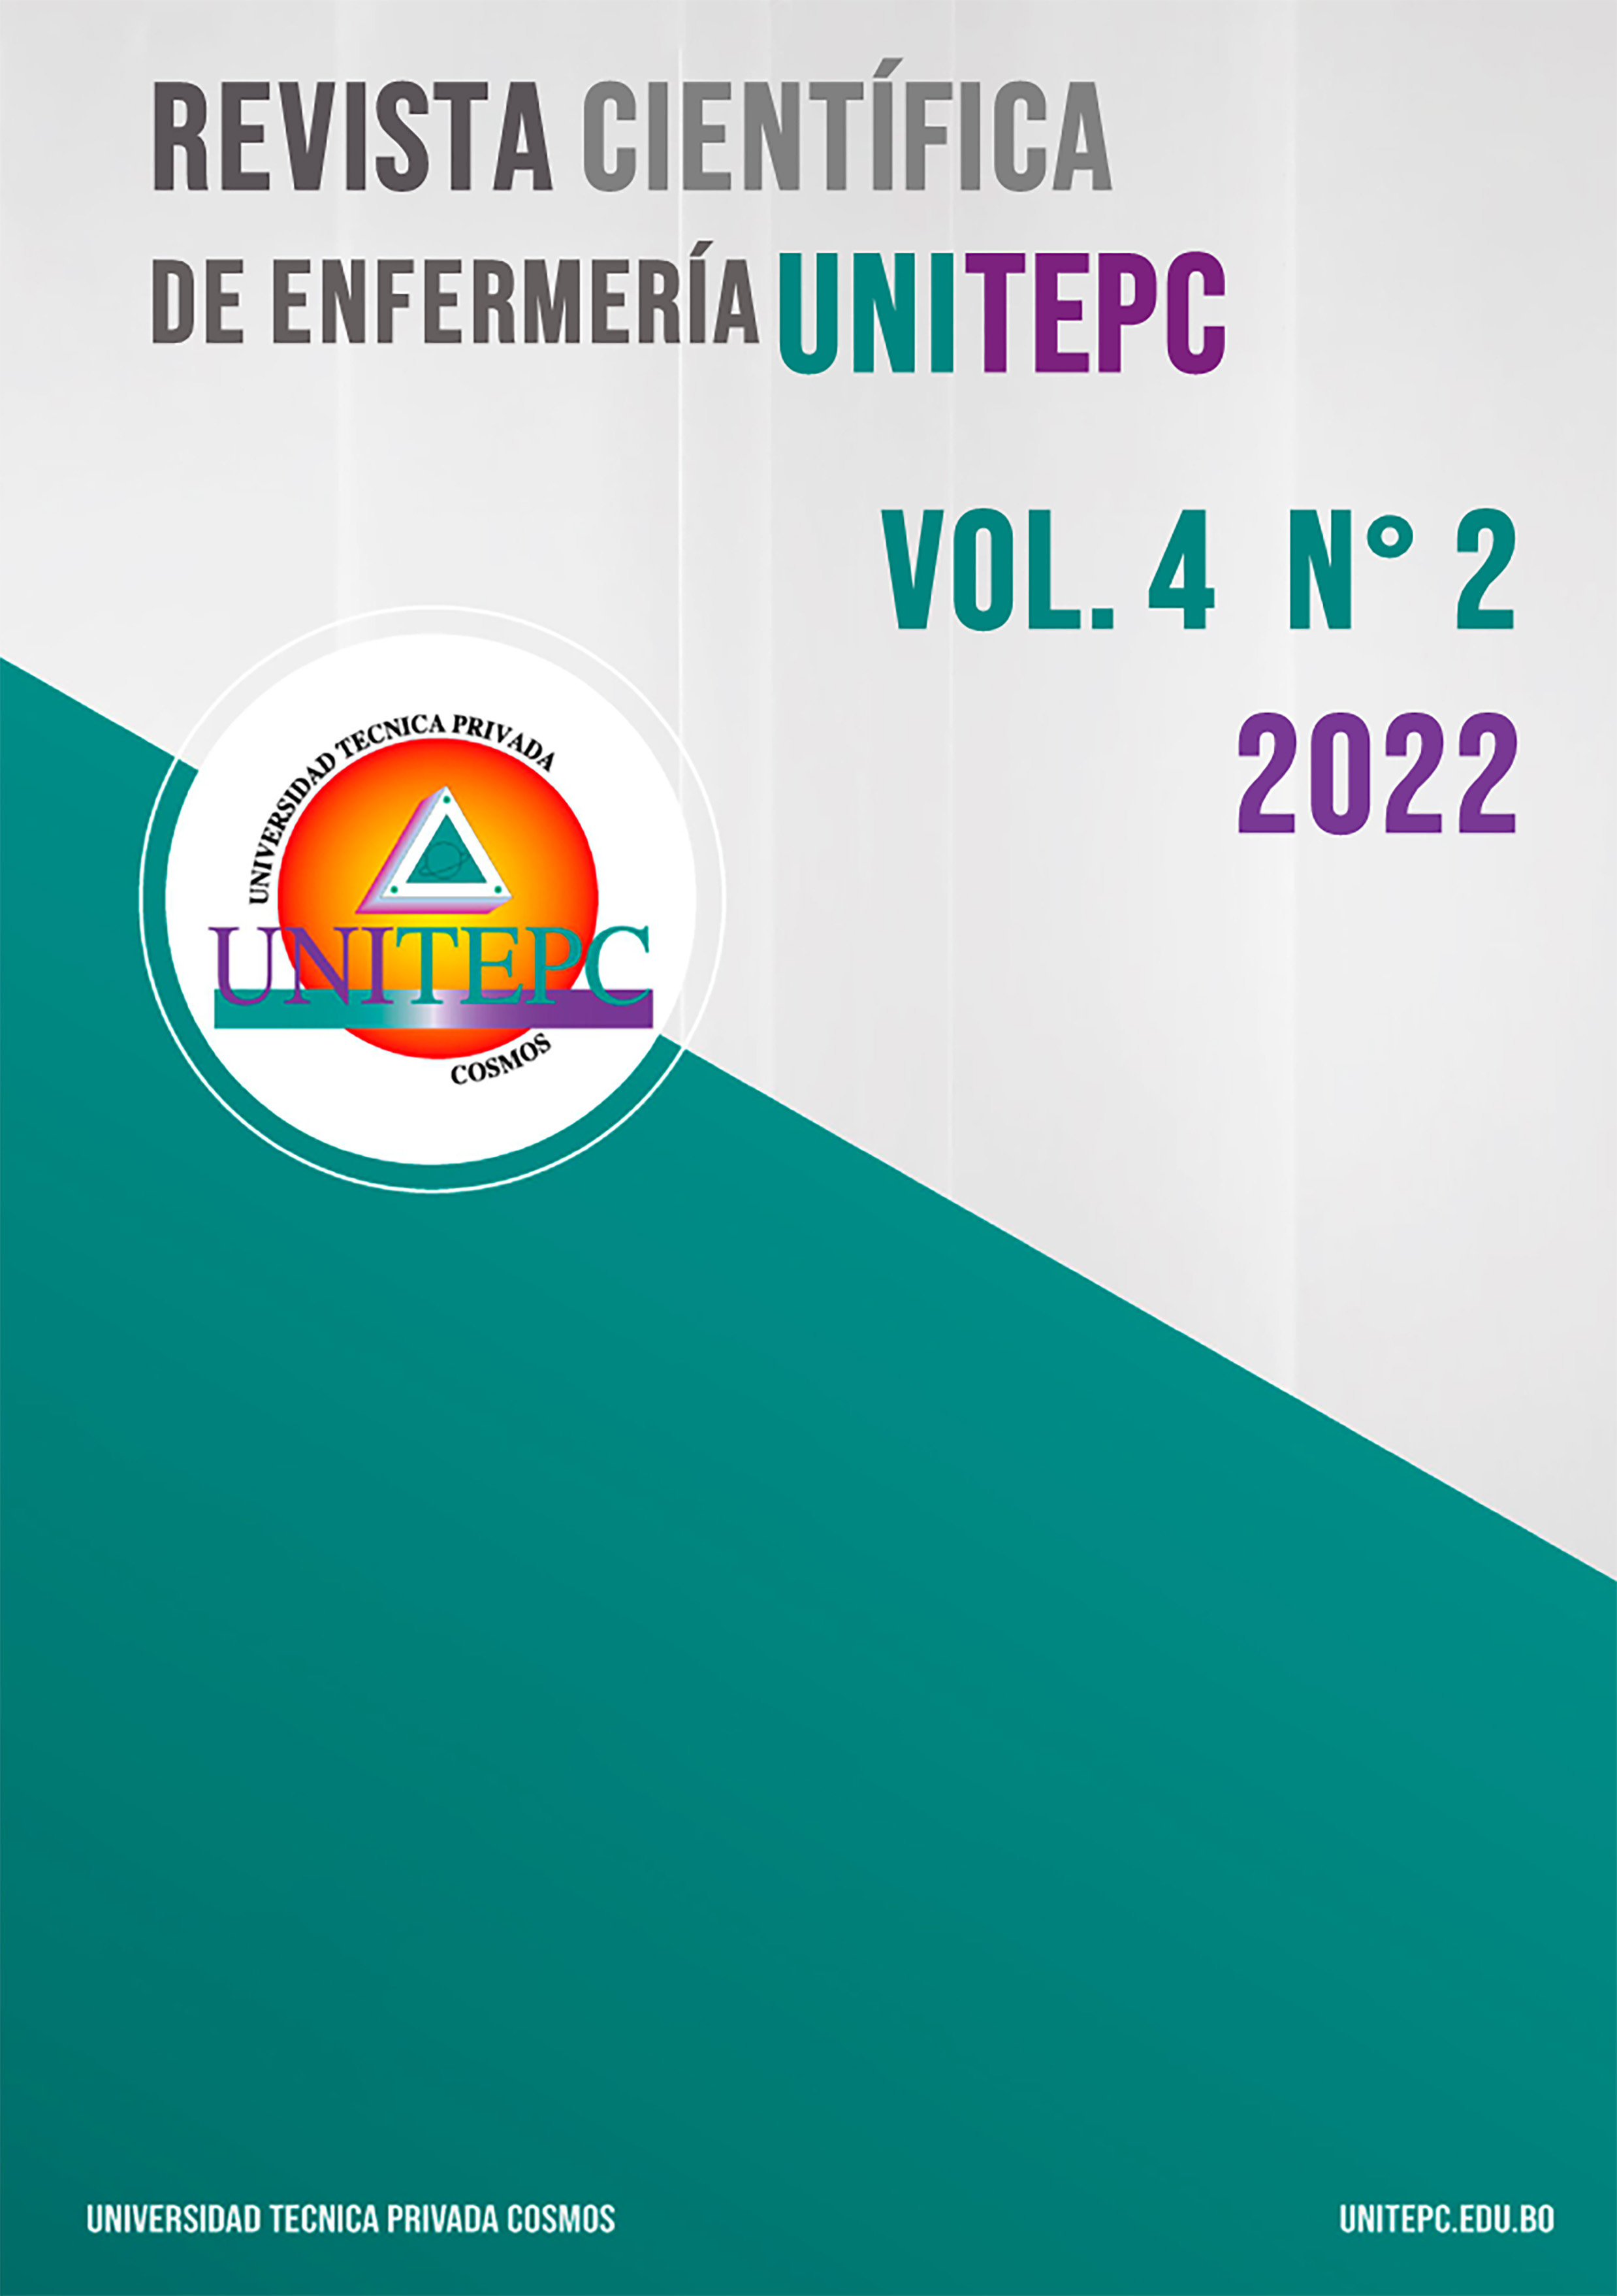 					View Vol. 4 No. 2 (2022): Revista Científica de Enfermería UNITEPC
				